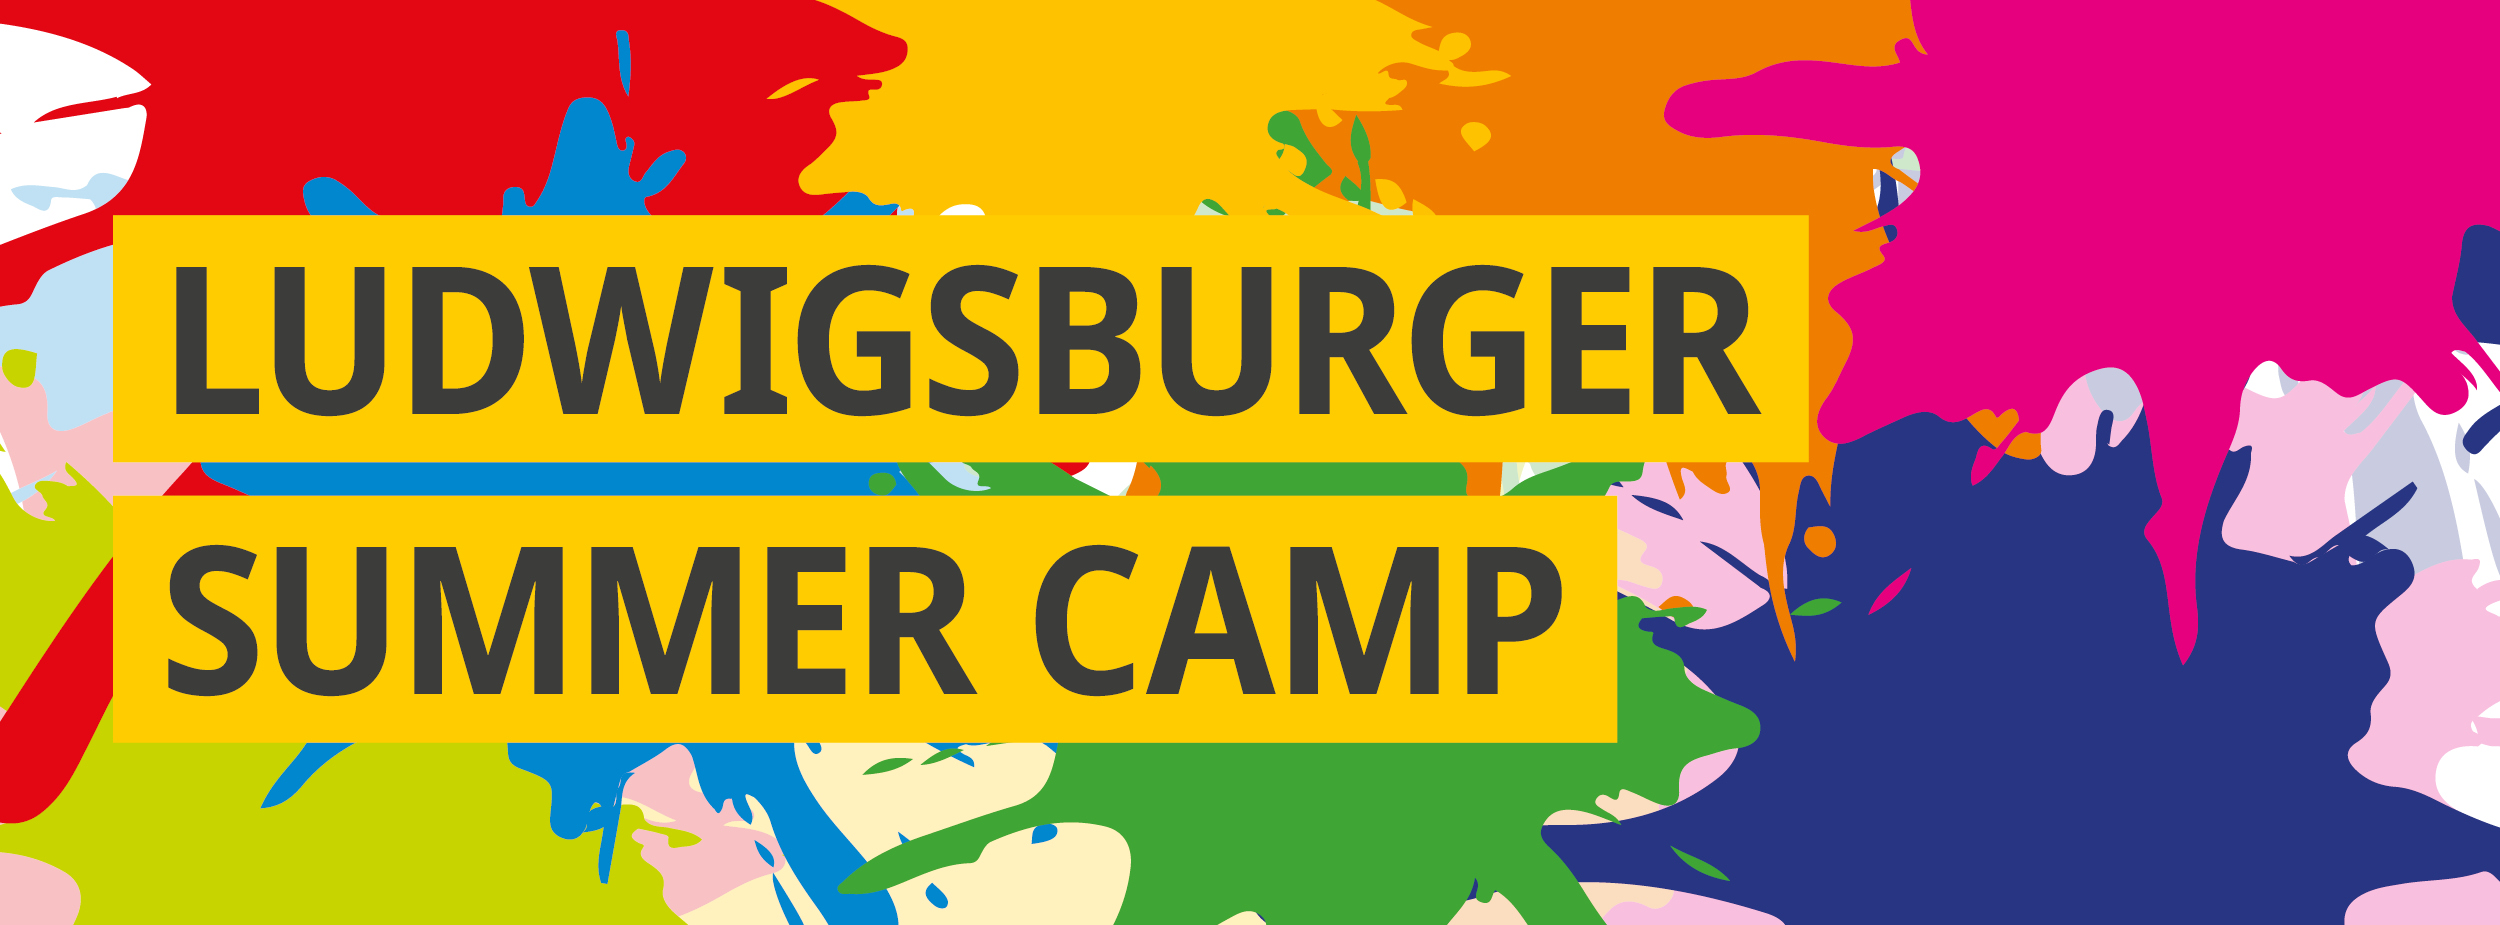 Bunte Farbkleckse symbolisieren Vielfalt an Aktivitäten und Kreativität beim Ludwigsburger Summer Camp